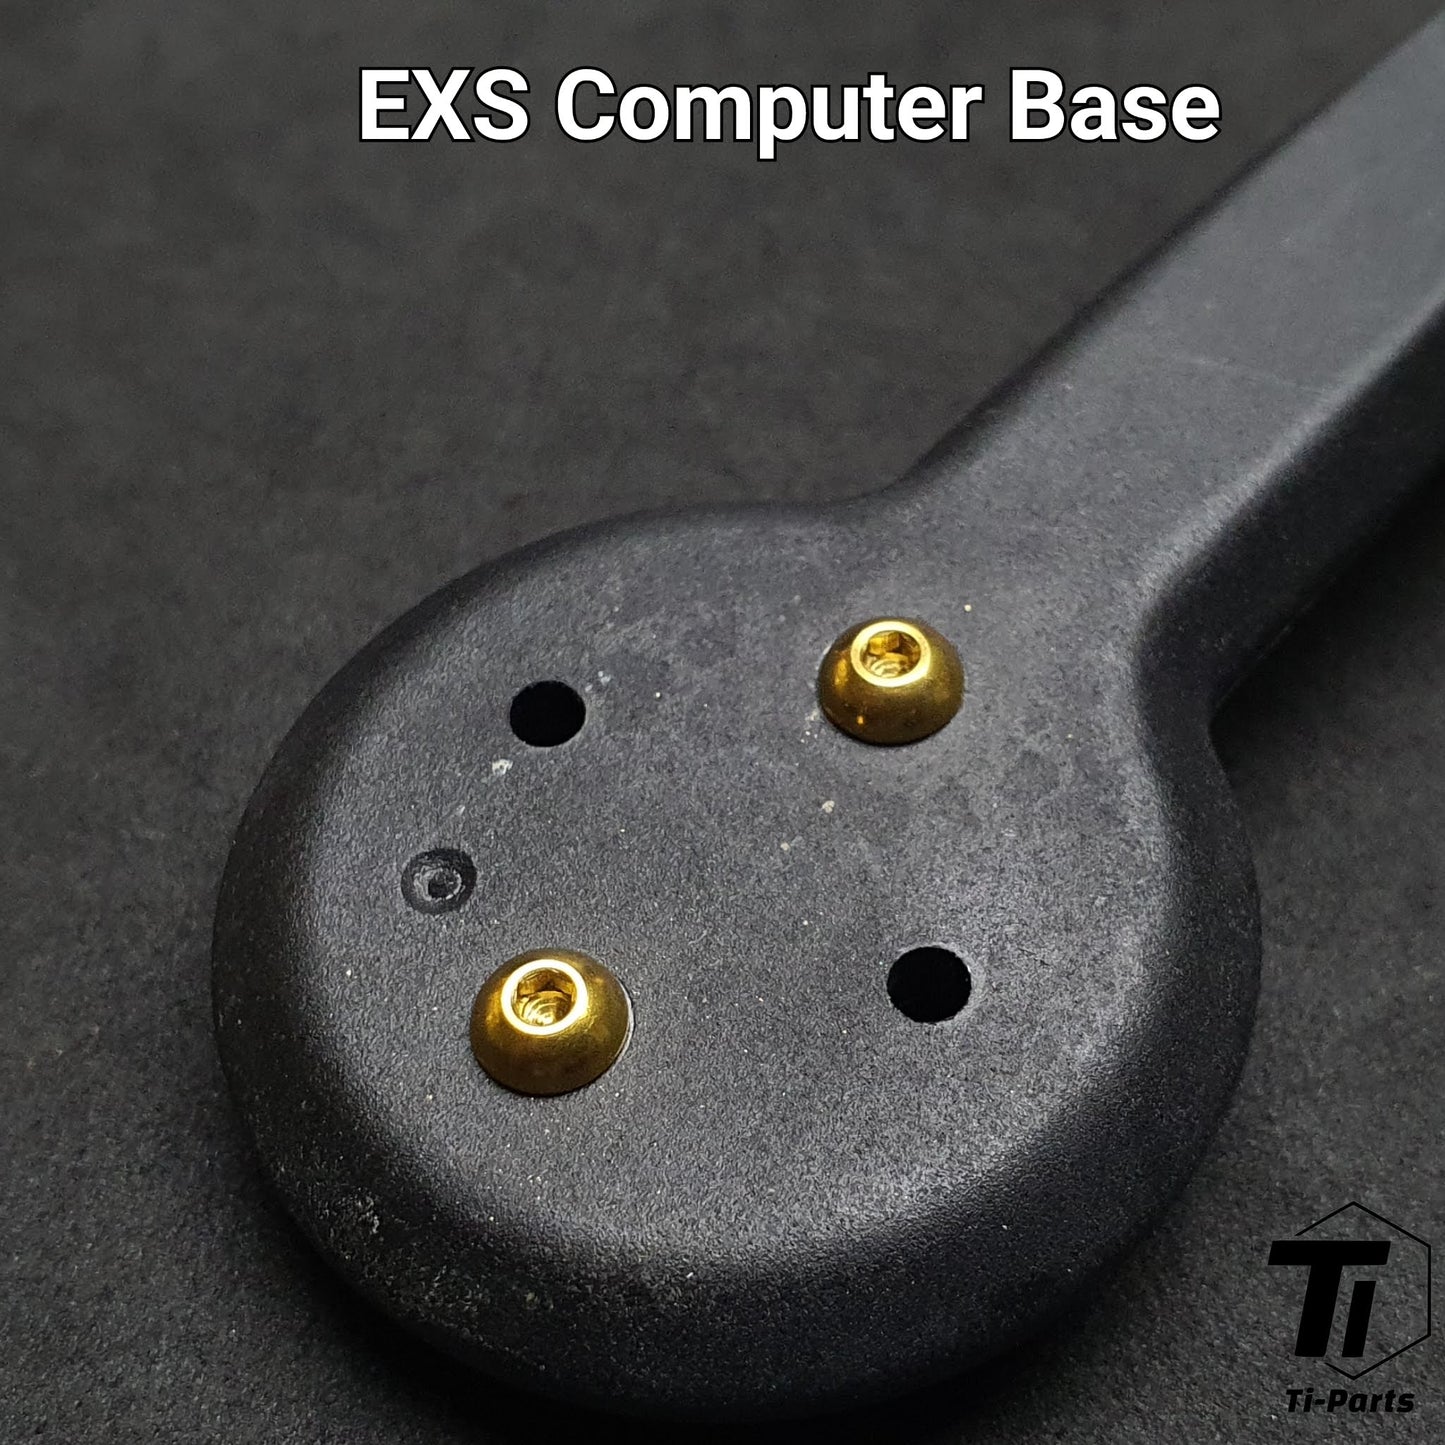 Μπουλόνι τιτανίου για βάση υπολογιστή EXS Aerover Dropbar | Βίδα στήριξης μετρητή | Tiparts Grade 5 Titanium Singapore